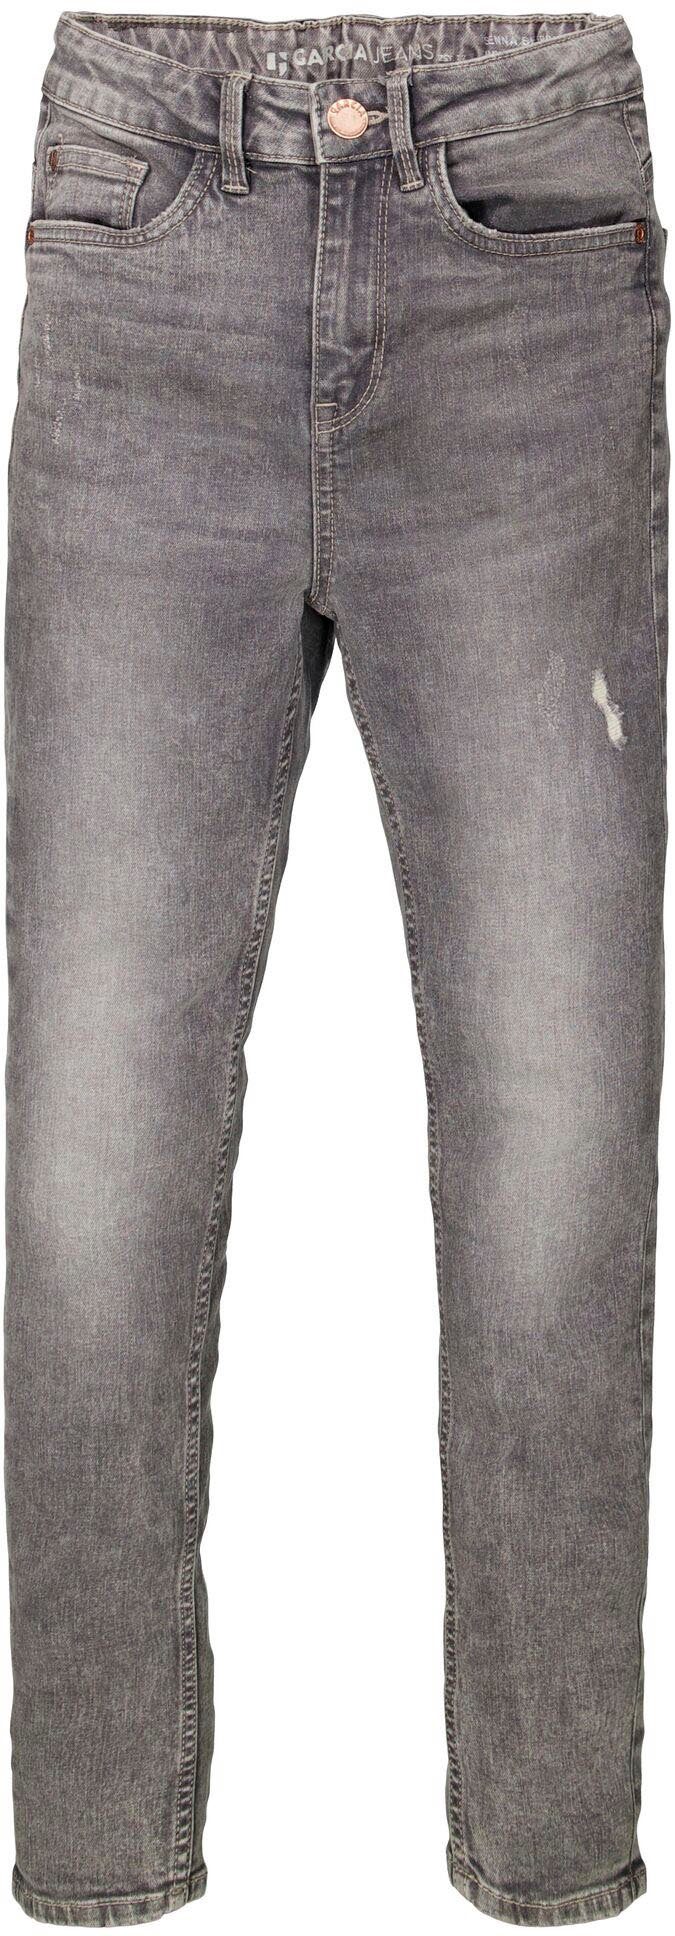 Garcia Taille hohe 565, Sehr schmalen Sienna und Passform Stretch-Jeans